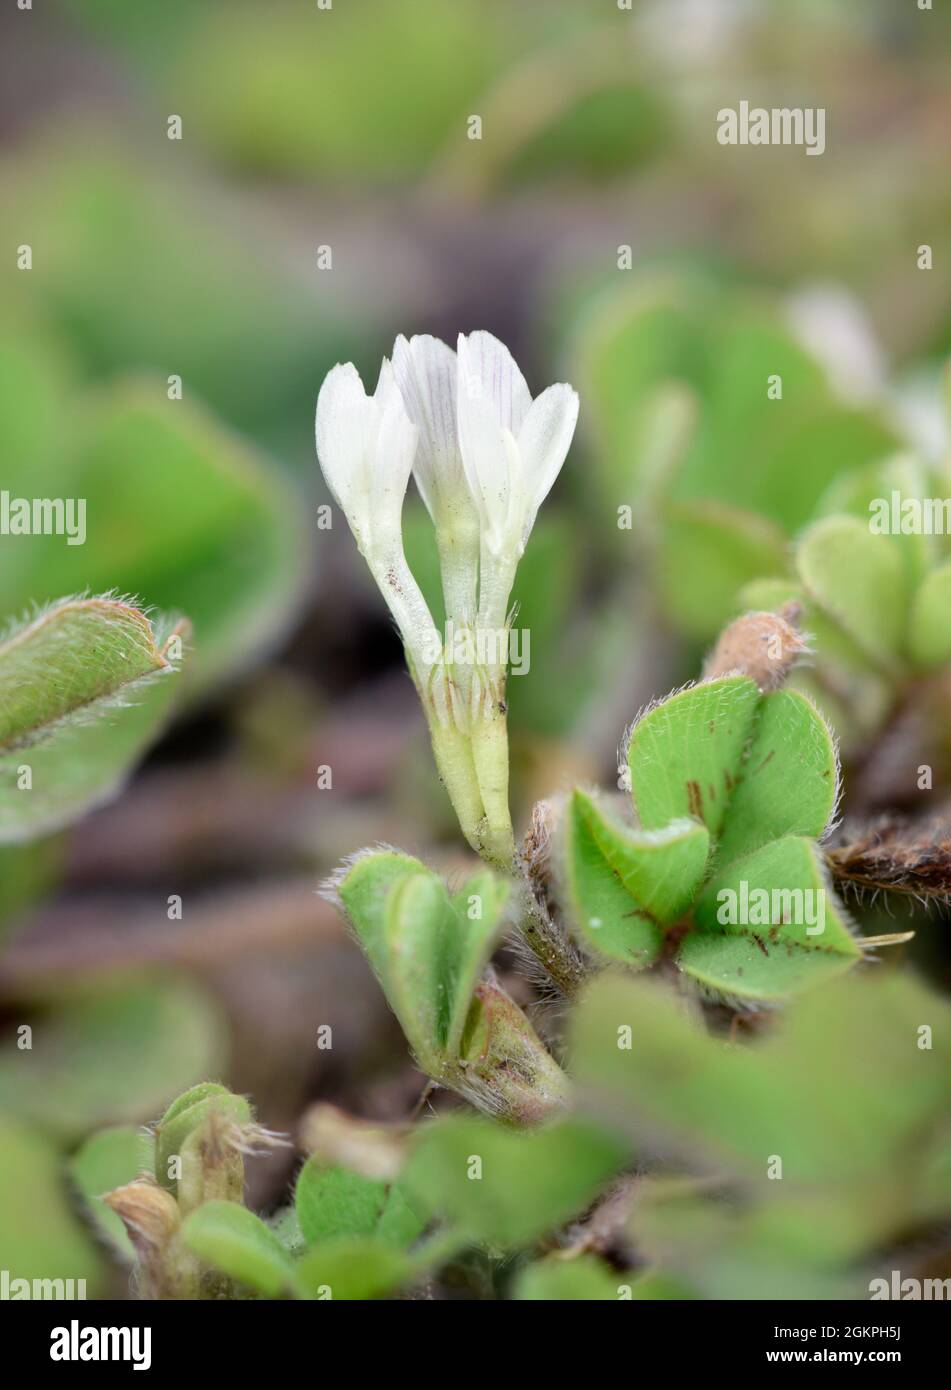 Subterranean Clover - Trifolium subterraneum Stock Photo